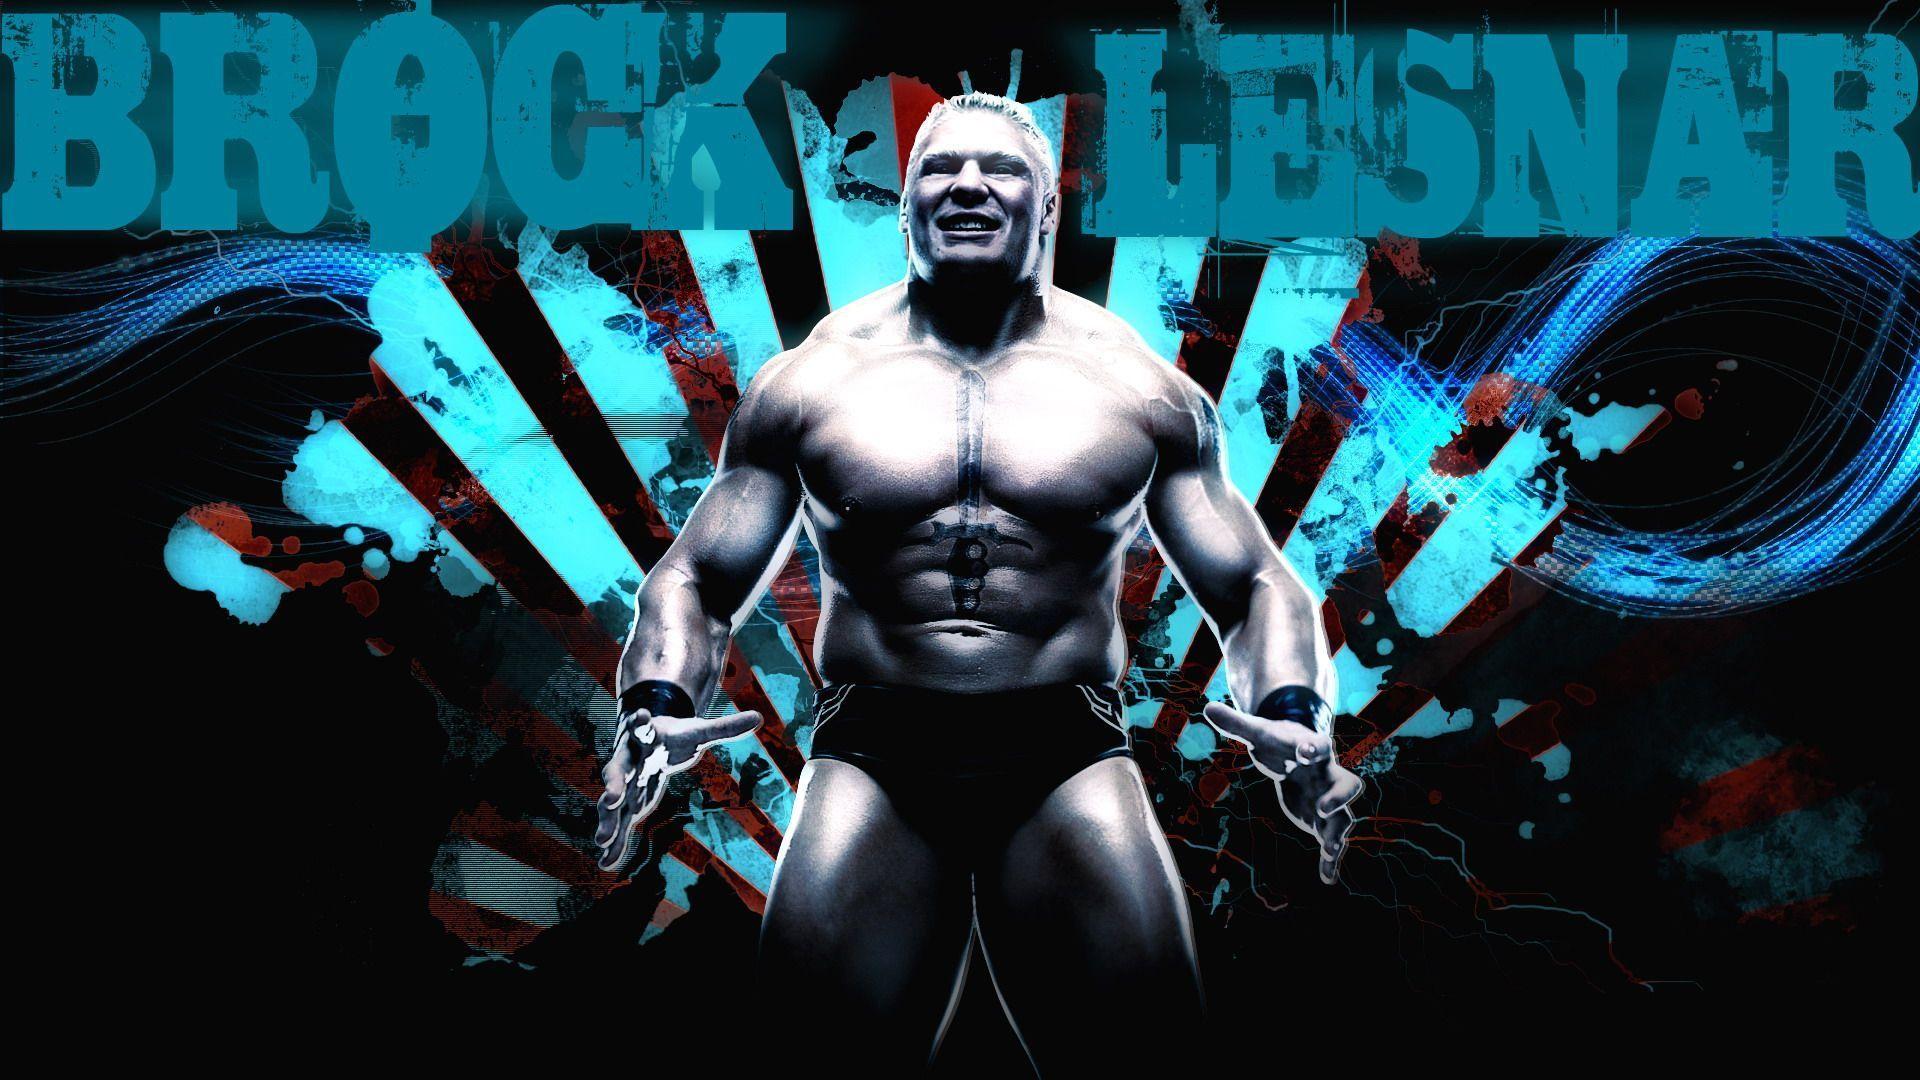 Brock Lesnar HD Wallpaper Free Download For PC Desktop